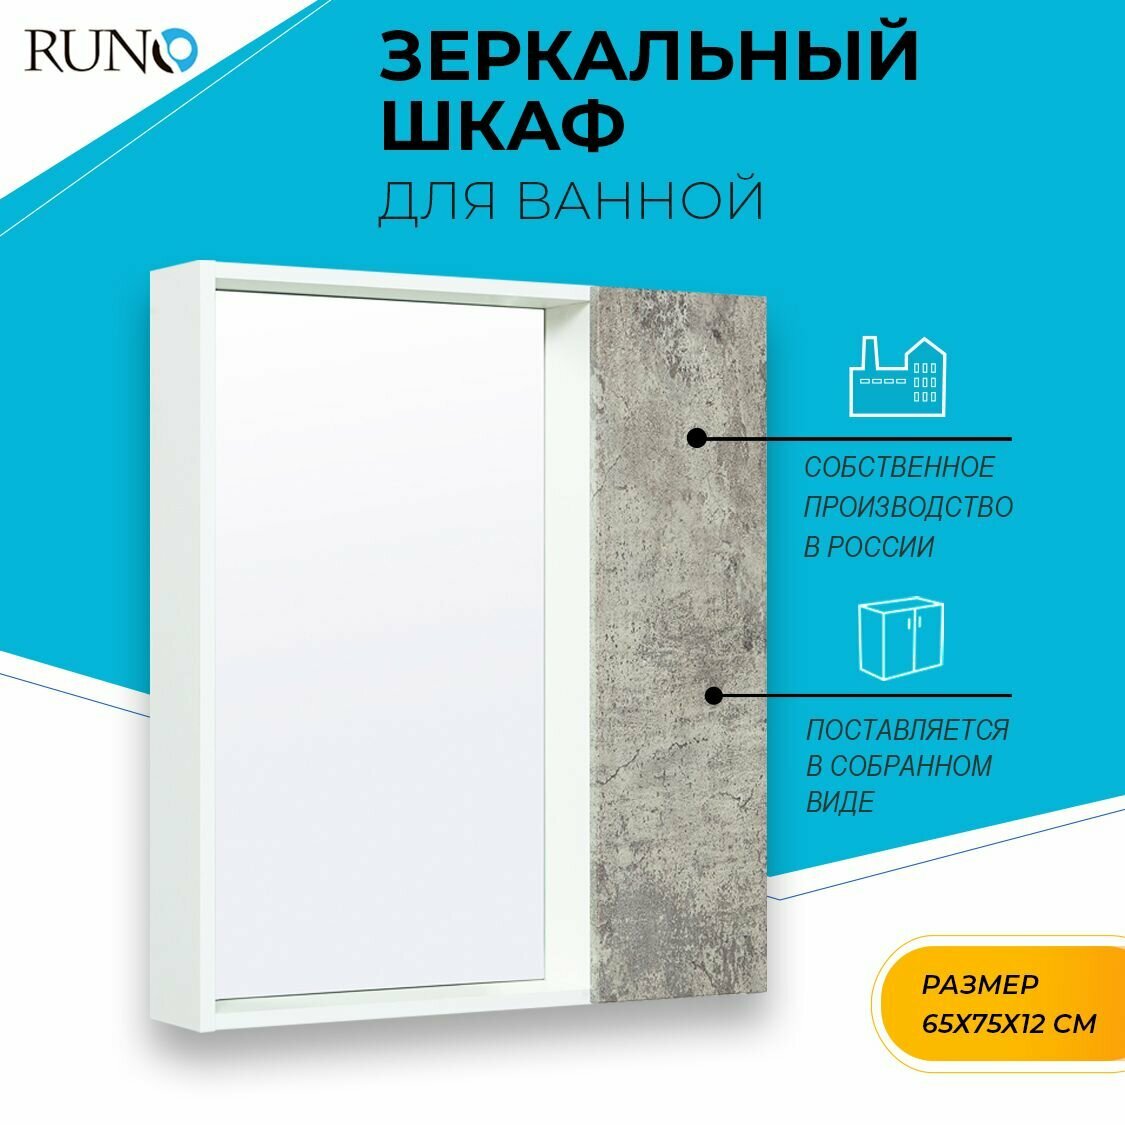 Зеркало шкаф для ванной / Runo / Манхэттен 65 /универсальный/серый бетон / полка для ванной